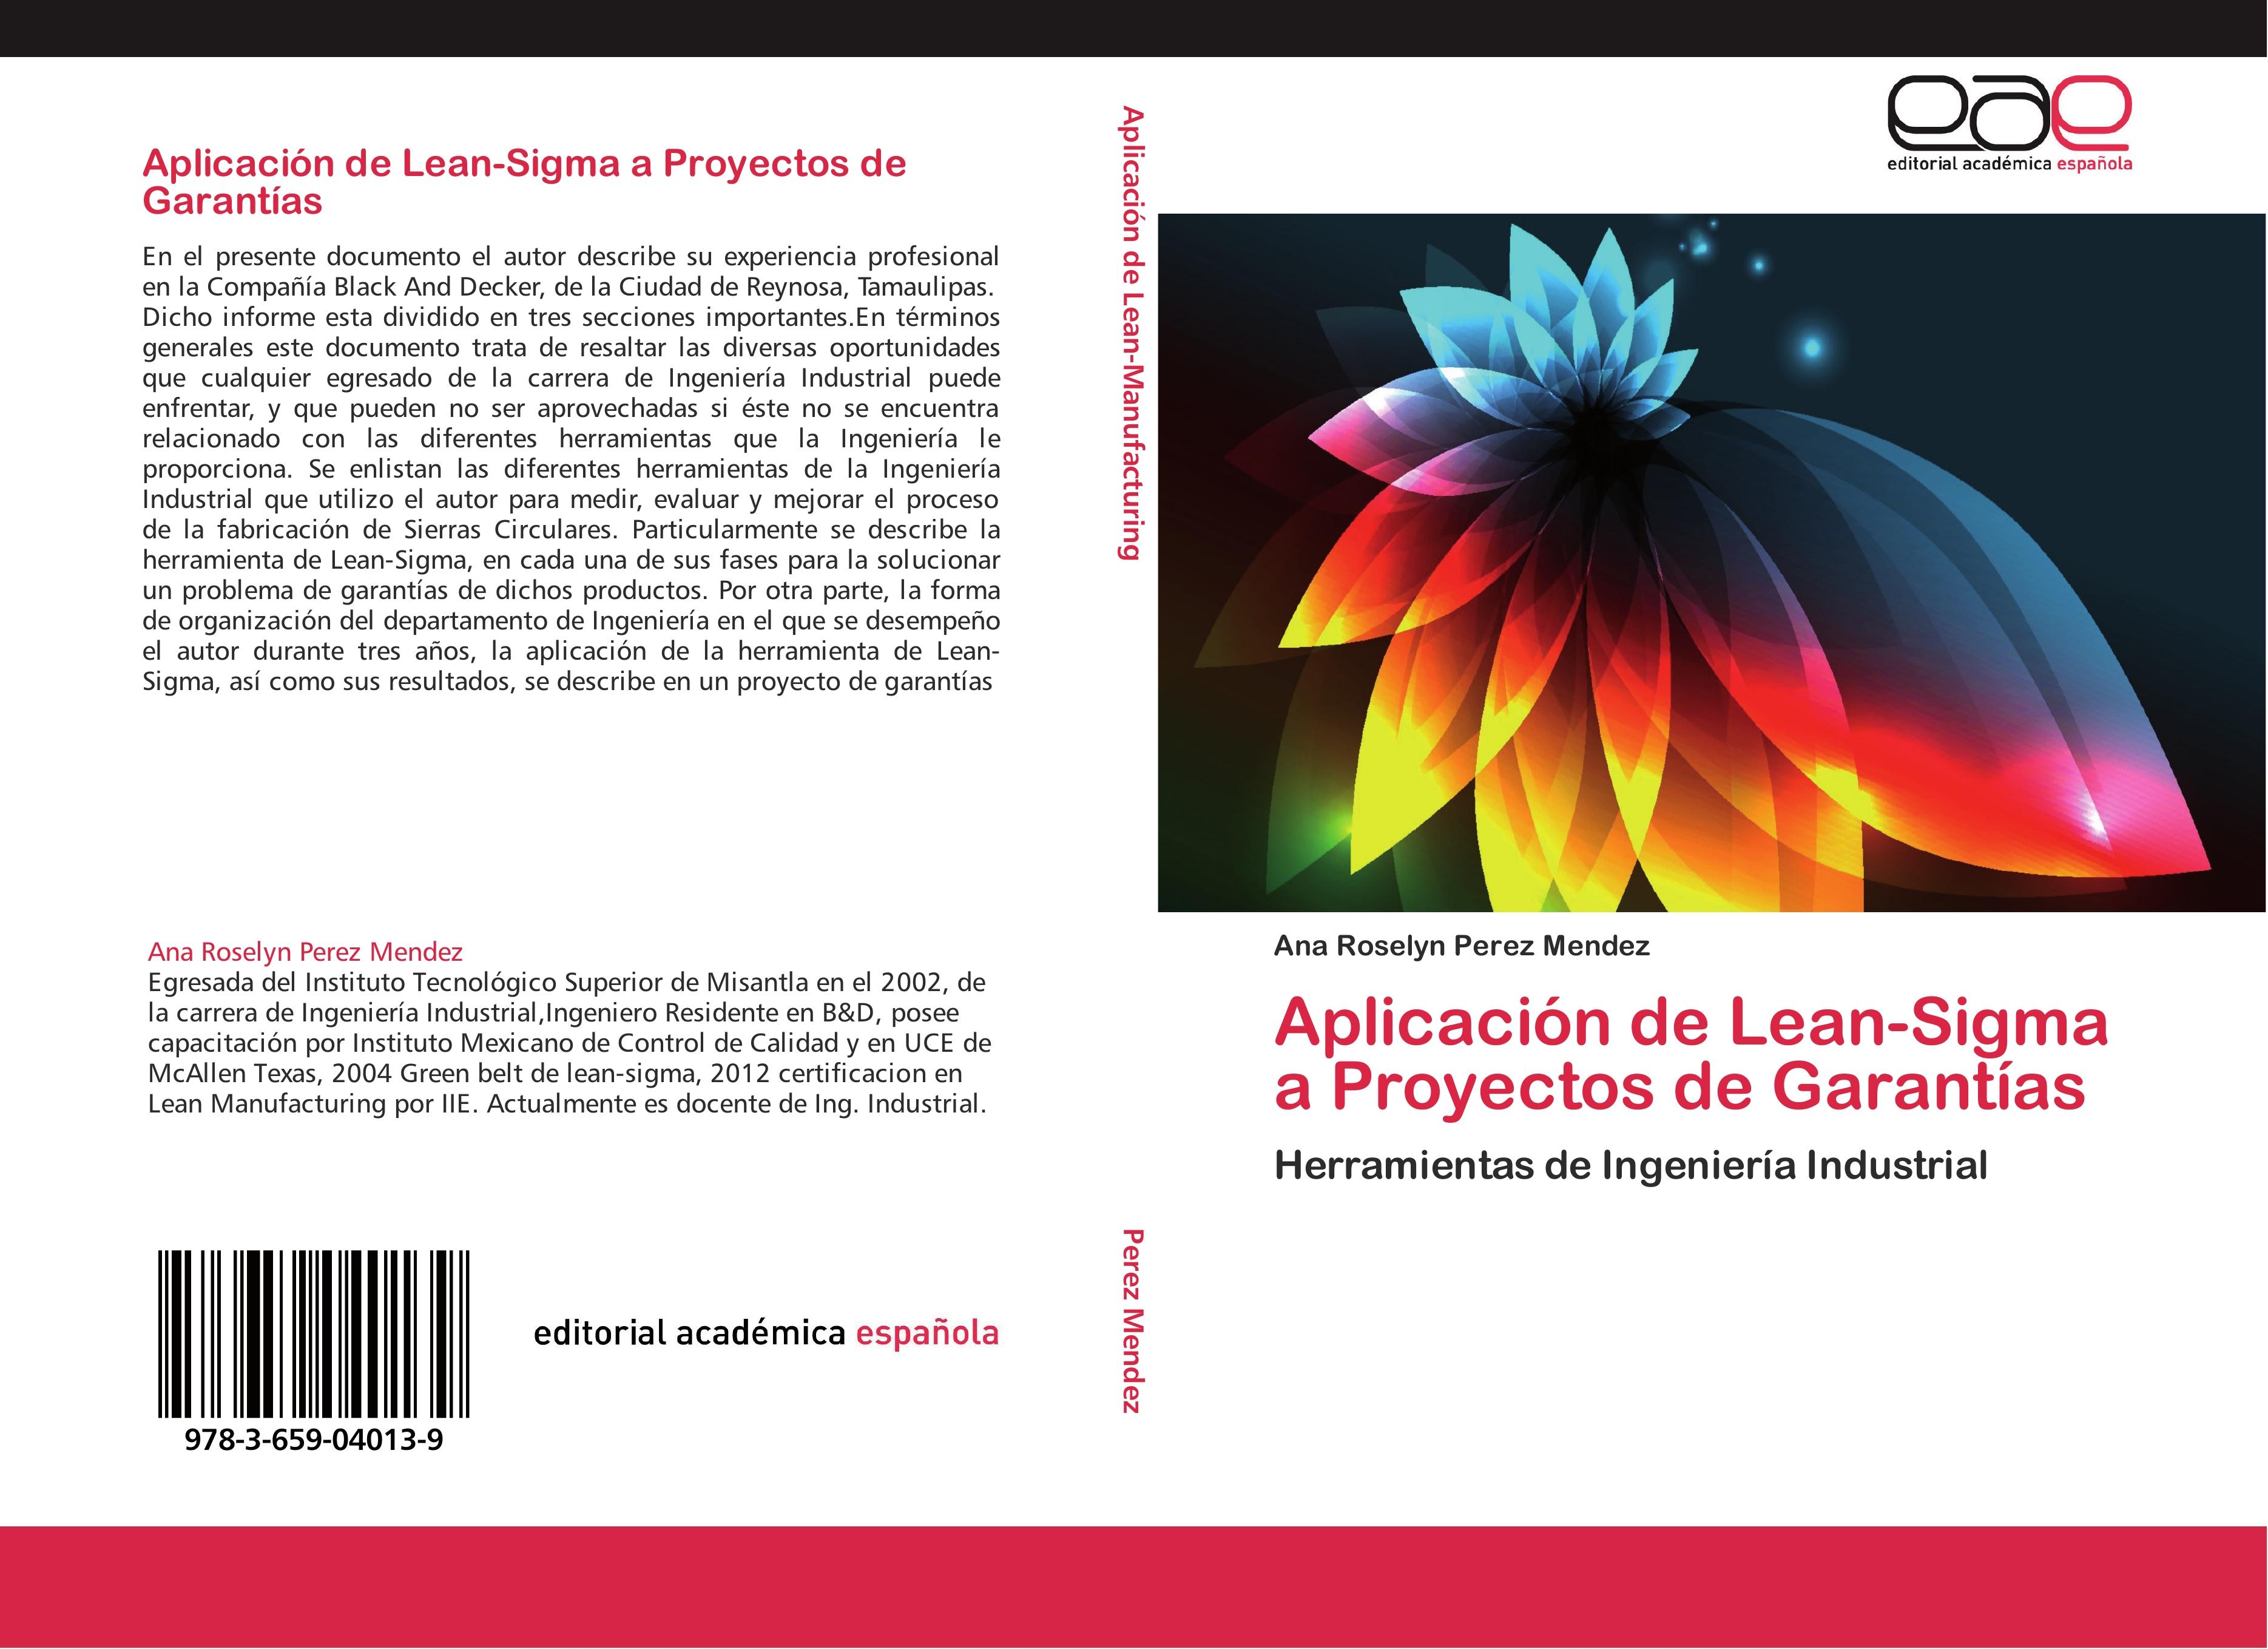 Aplicación de Lean-Sigma a Proyectos de Garantías - Ana Roselyn Perez Mendez